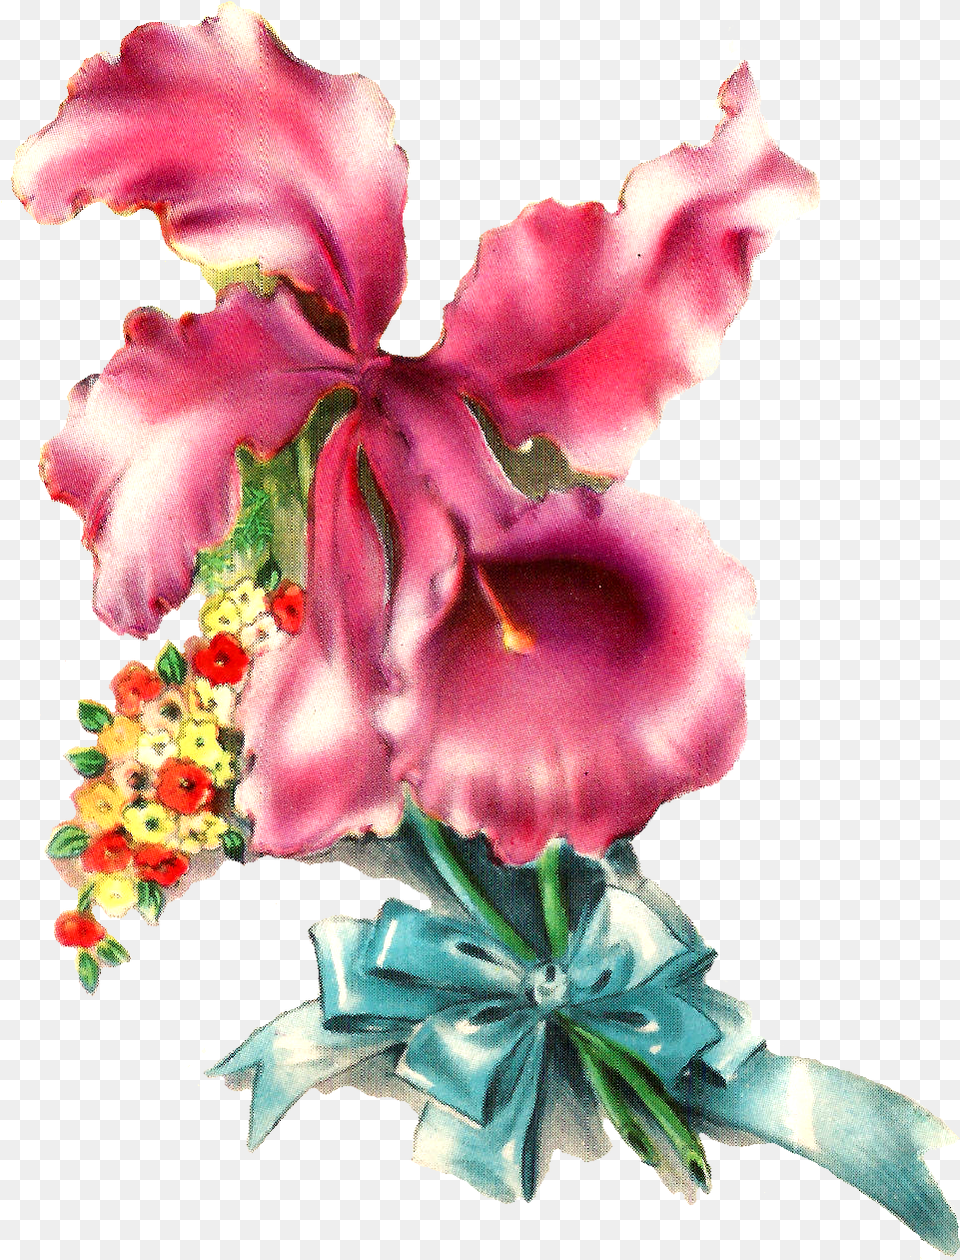 Orchid Flower Image Illustration Botanical Art Desert Rose, Flower Arrangement, Petal, Plant, Flower Bouquet Free Png Download